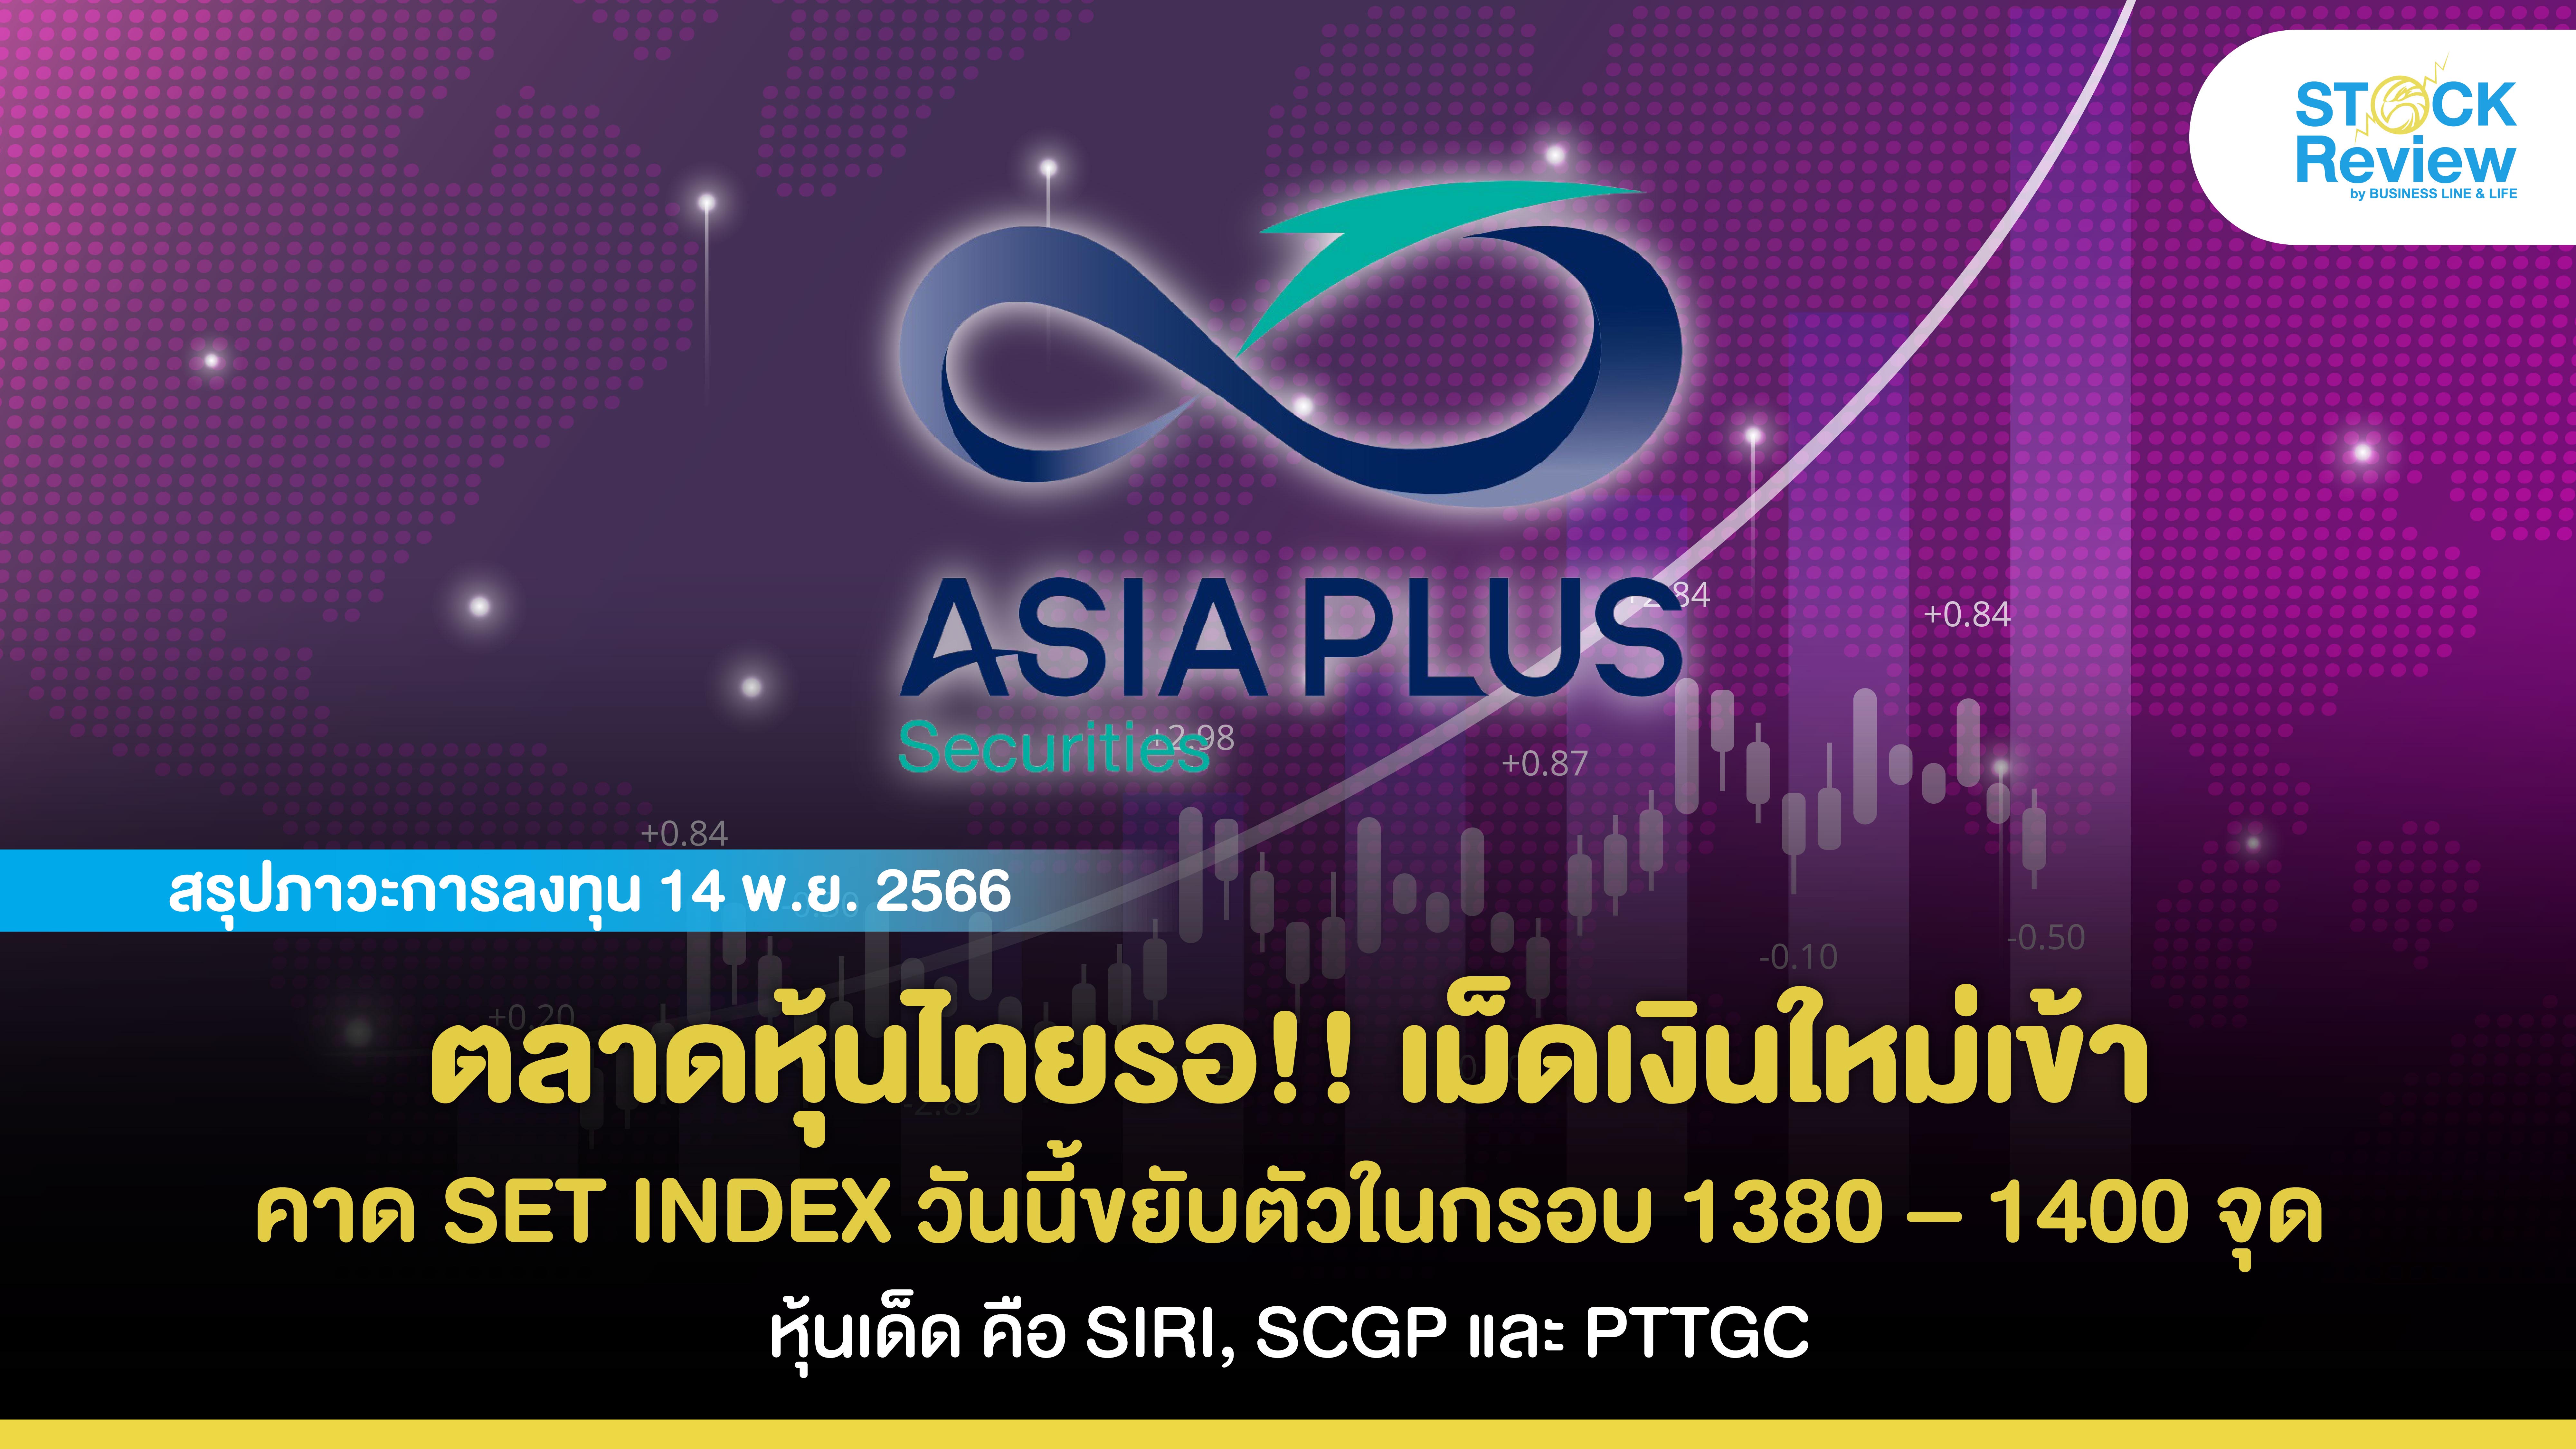 ตลาดหุ้นไทยรอ!! เม็ดเงินใหม่เข้า คาด SET INDEX วันนี้ขยับตัวในกรอบ 1380 – 1400 จุด และหุ้นเด็ด คือ SIRI, SCGP และ PTTGC